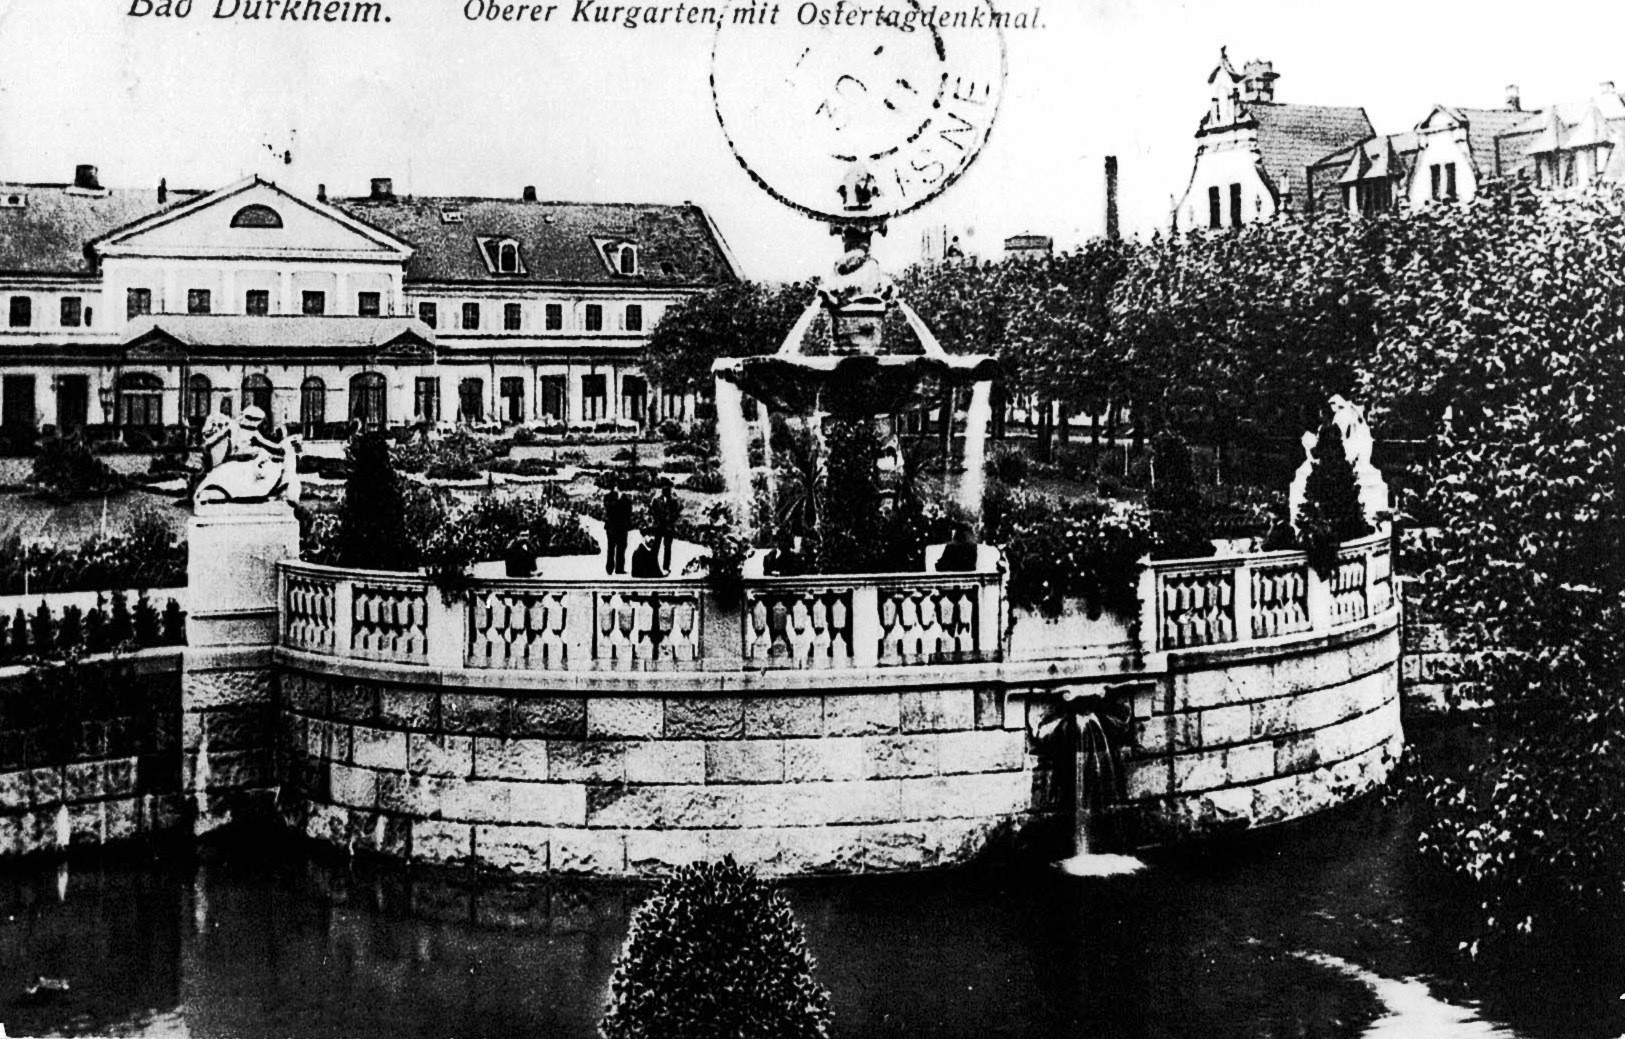 Foto-Sammlung Adolf Krapp, Ordner 14: Kur-Park, 1910 (Museumsgesellschaft Bad Dürkheim e.V. CC BY-NC-SA)